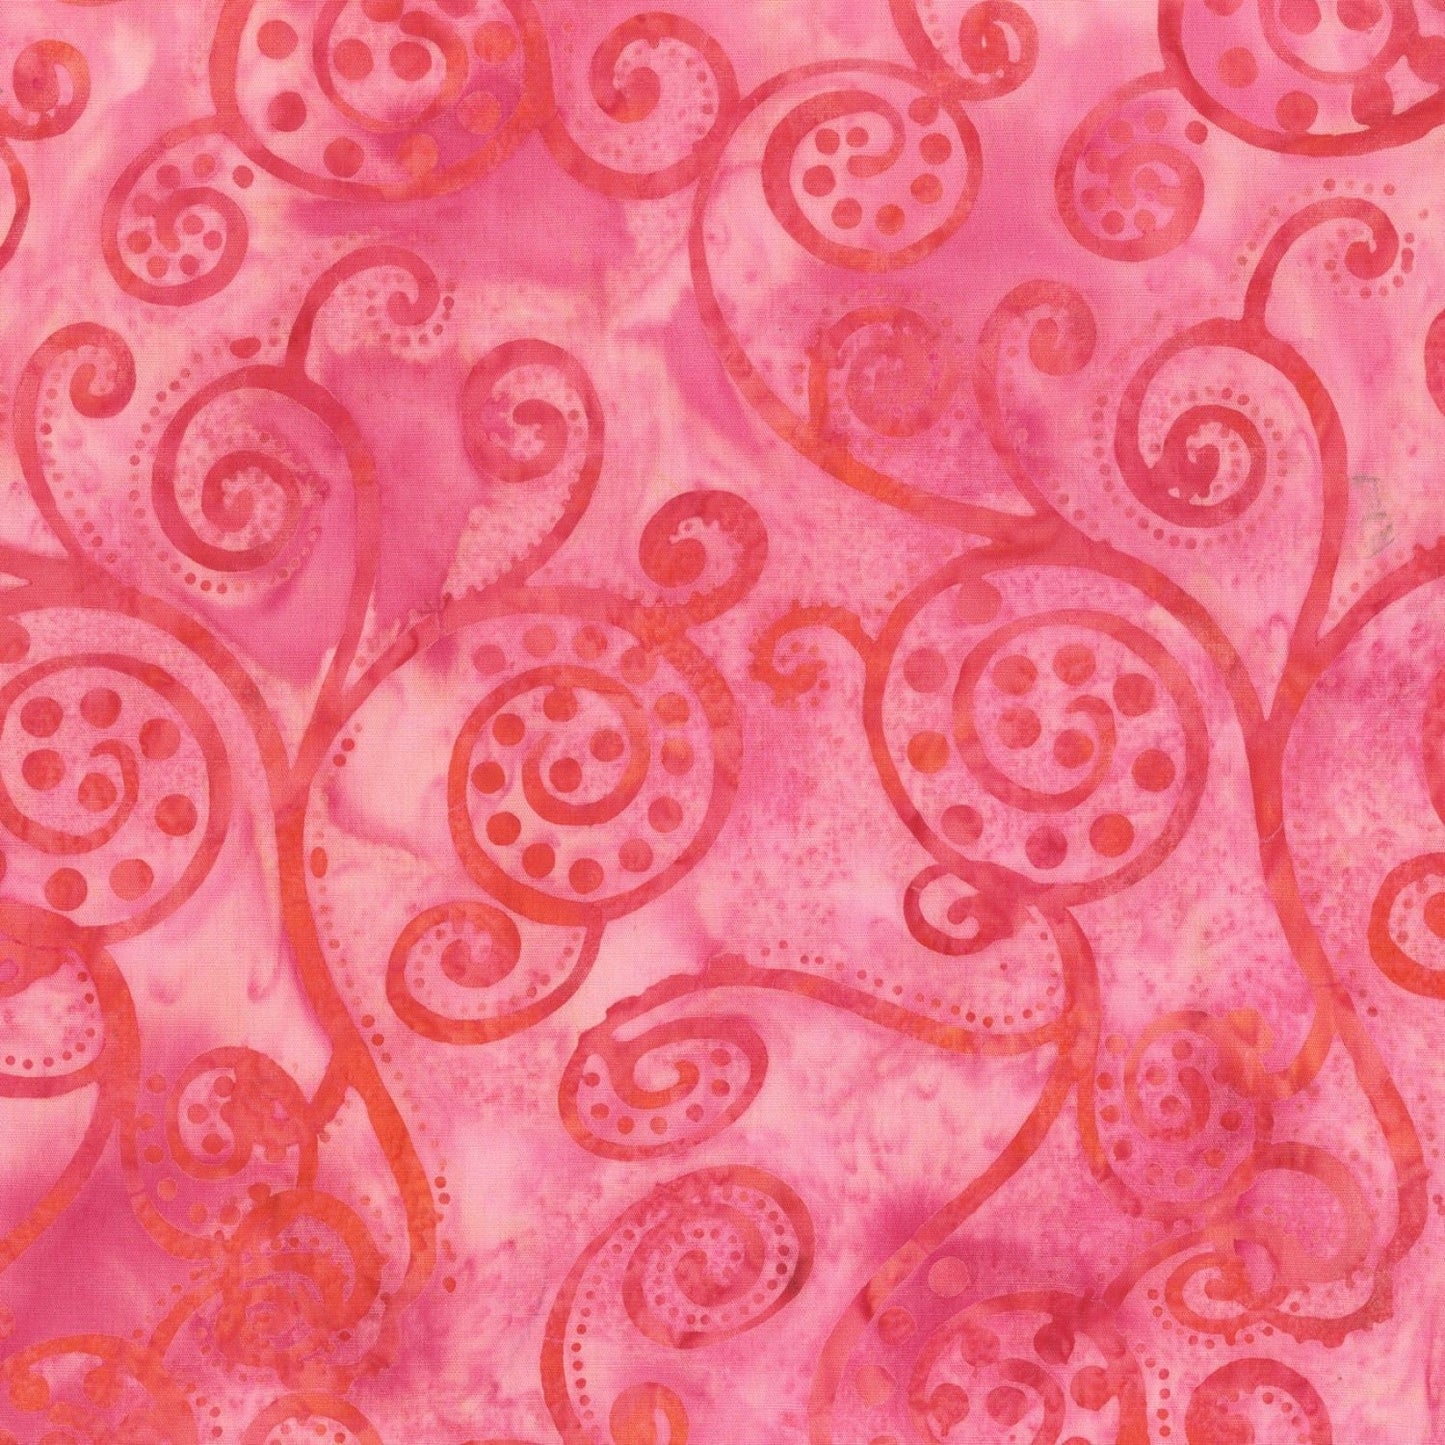 Fairy Dance Batik by Jacqueline de Jonge Pink Batik 3039Q-X Cotton Woven Fabric